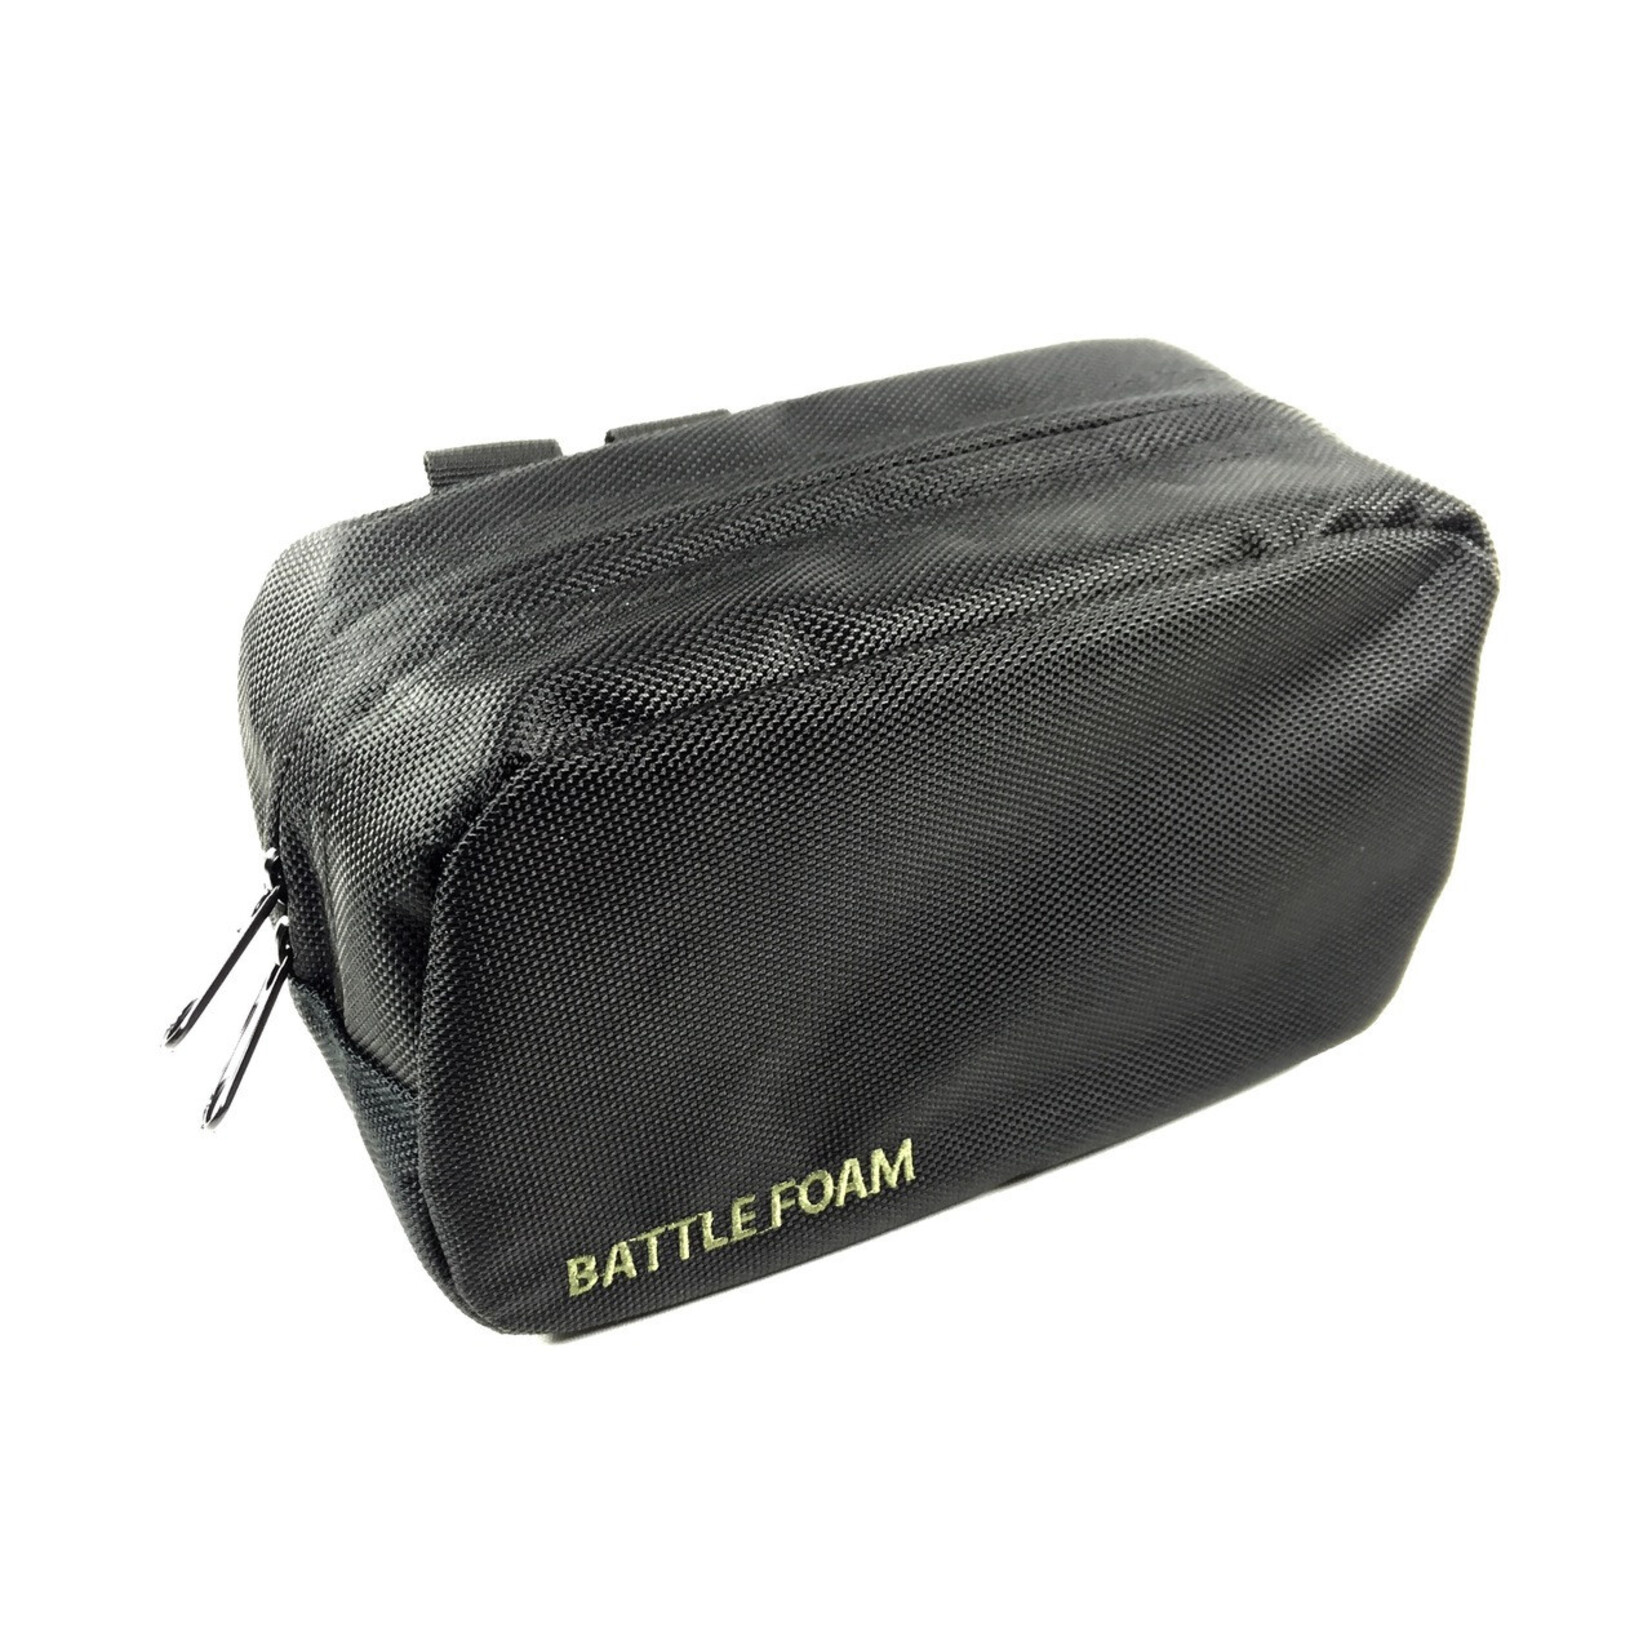 Battlefoam Battle Foam: Ditty Bag